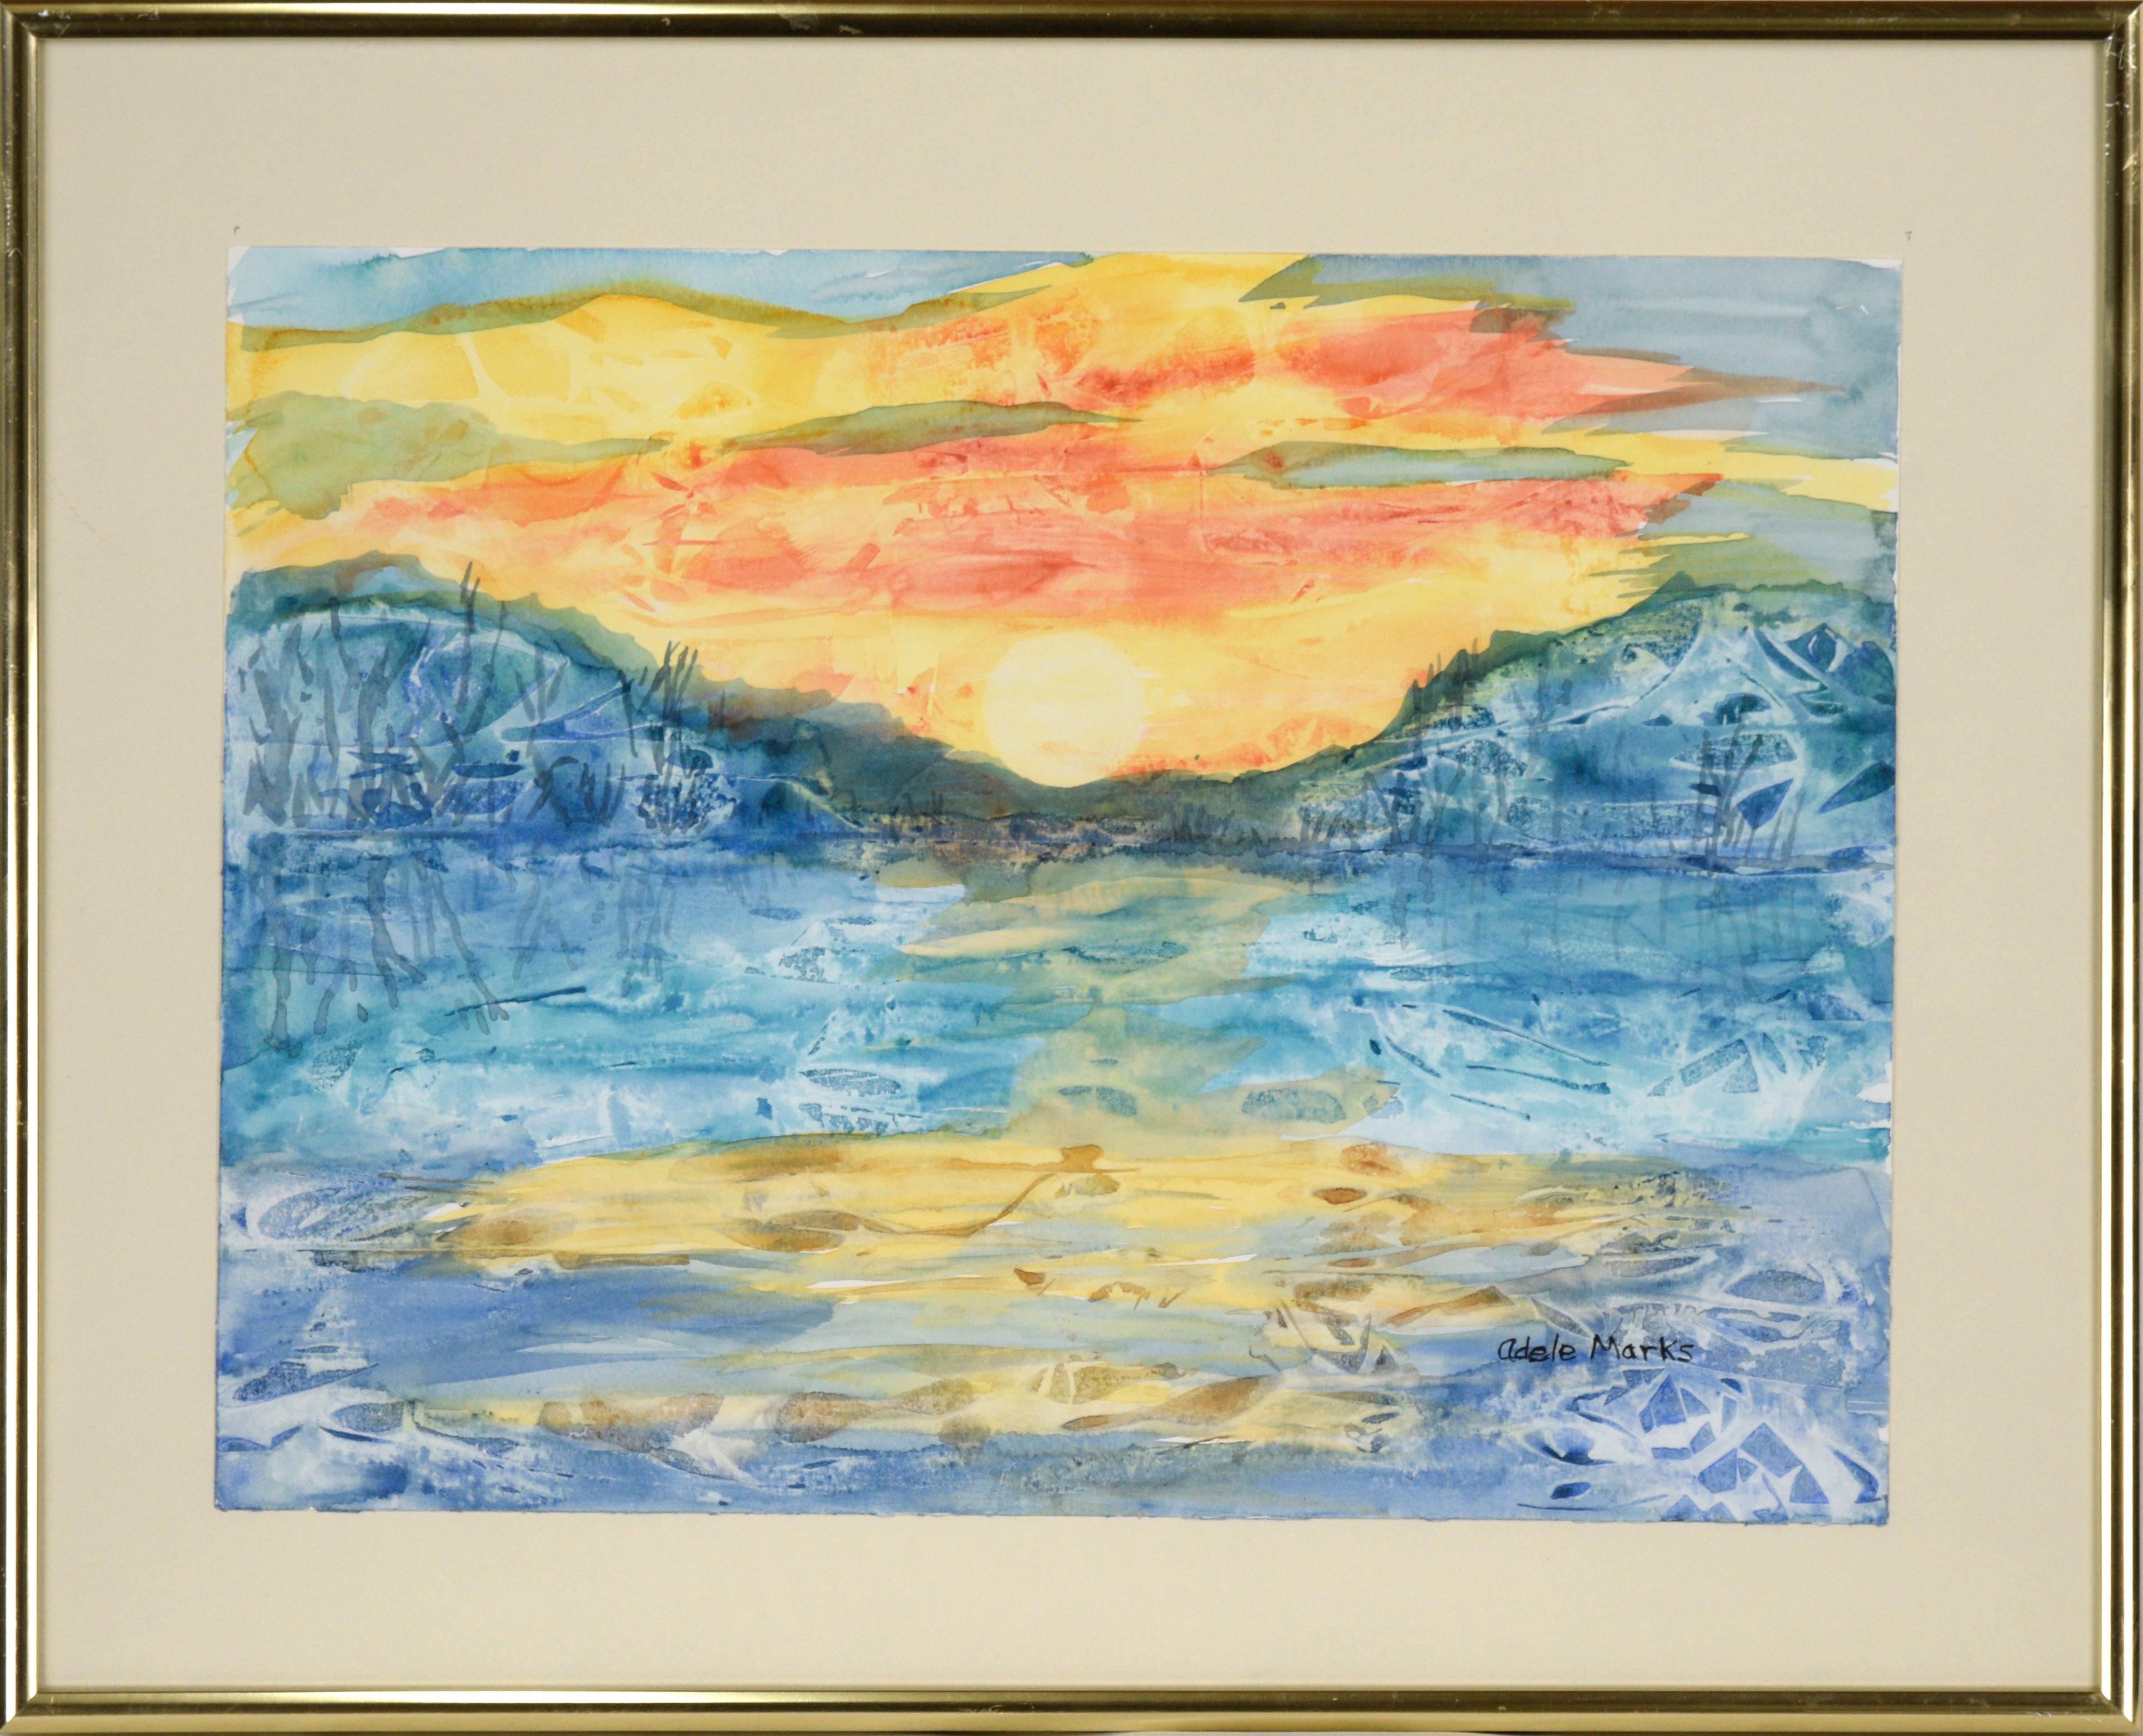 Landscape Art Adele Marks - Un coucher de soleil vif au-dessus d'un lac - Paysage abstrait